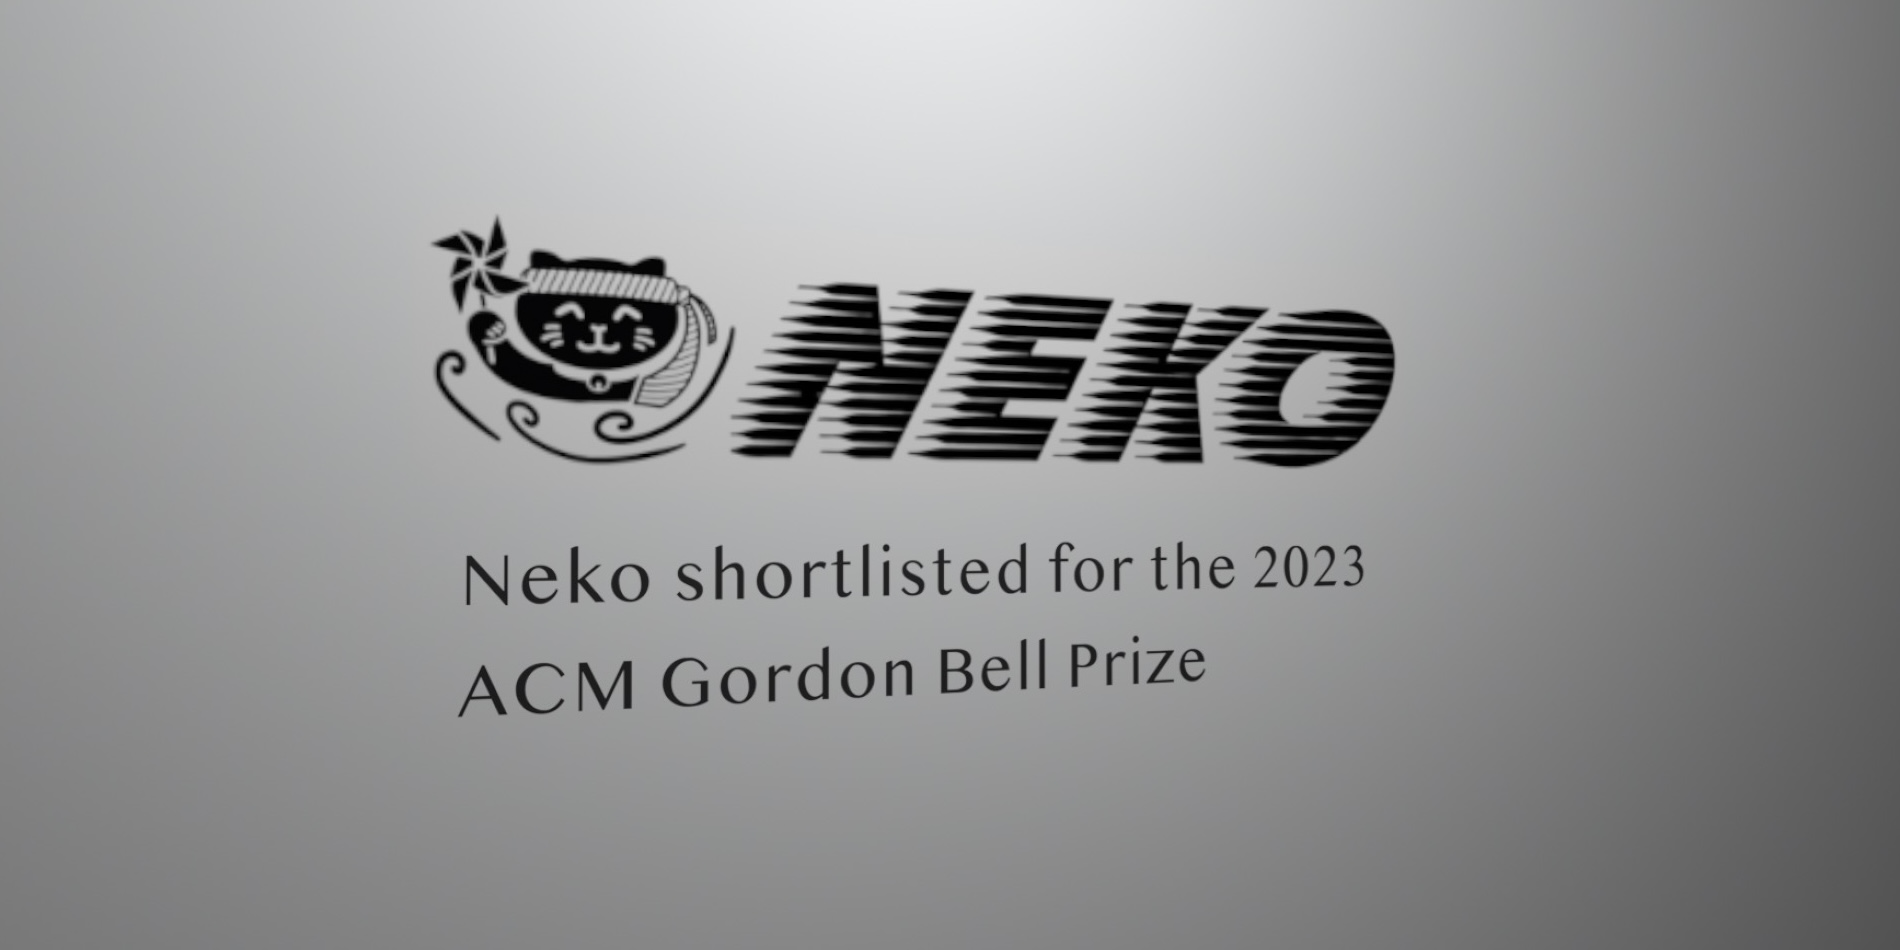 Neko logo. ACM Gordon Bell Prize